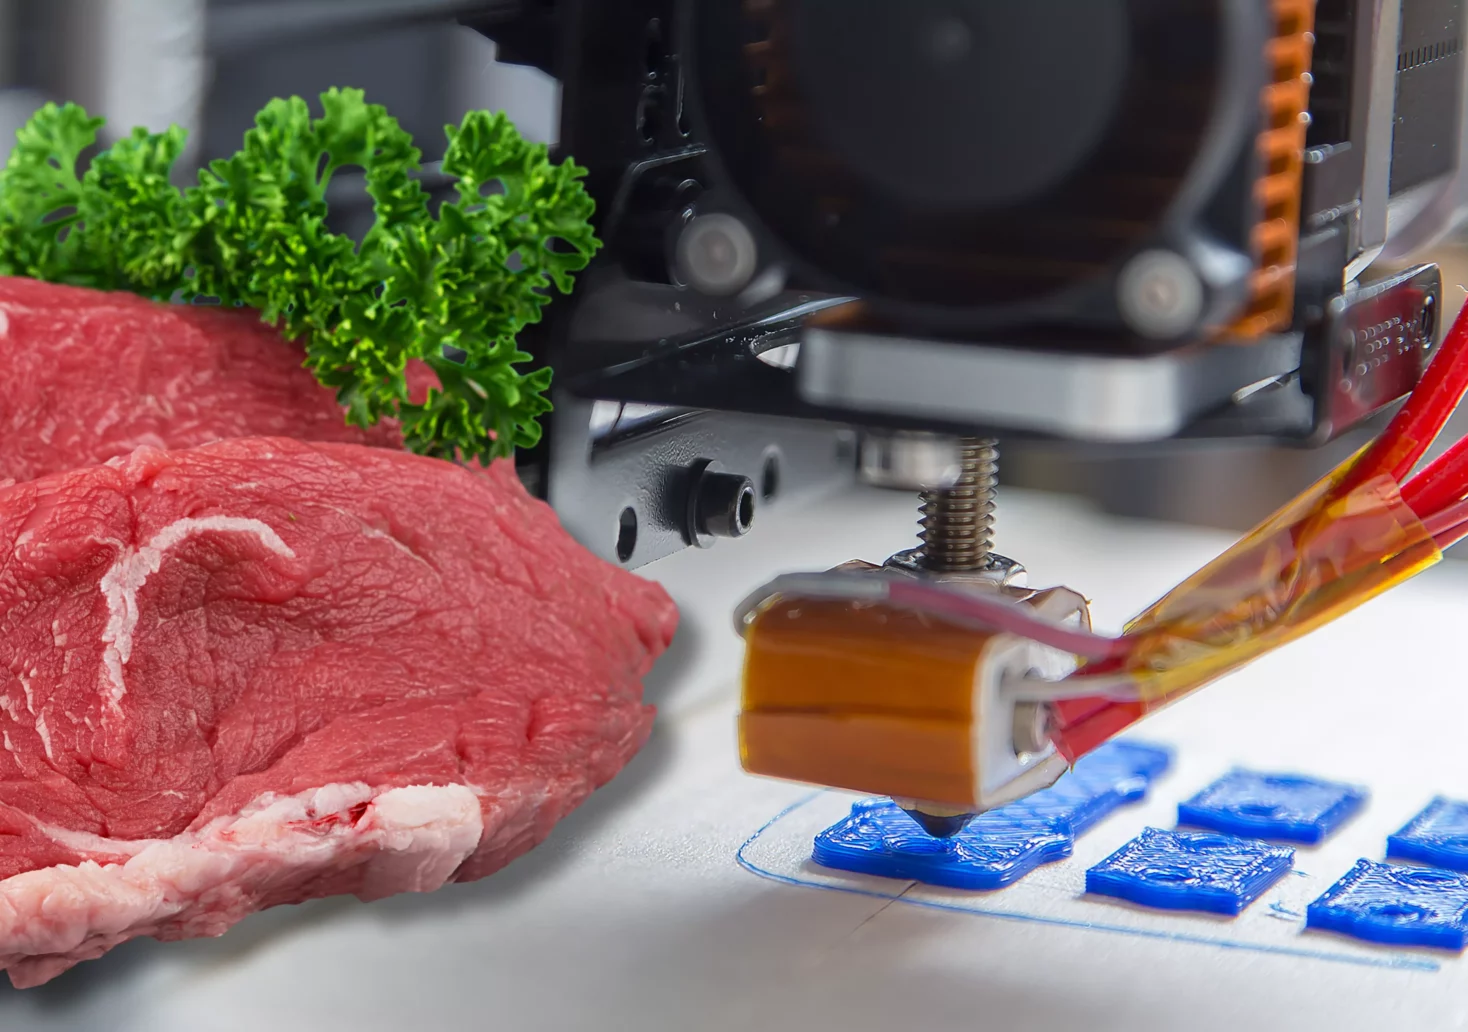 Eine Bildmontage auf 5min.at zeigt ein Stück Fleisch und einen 3D-Drucker.